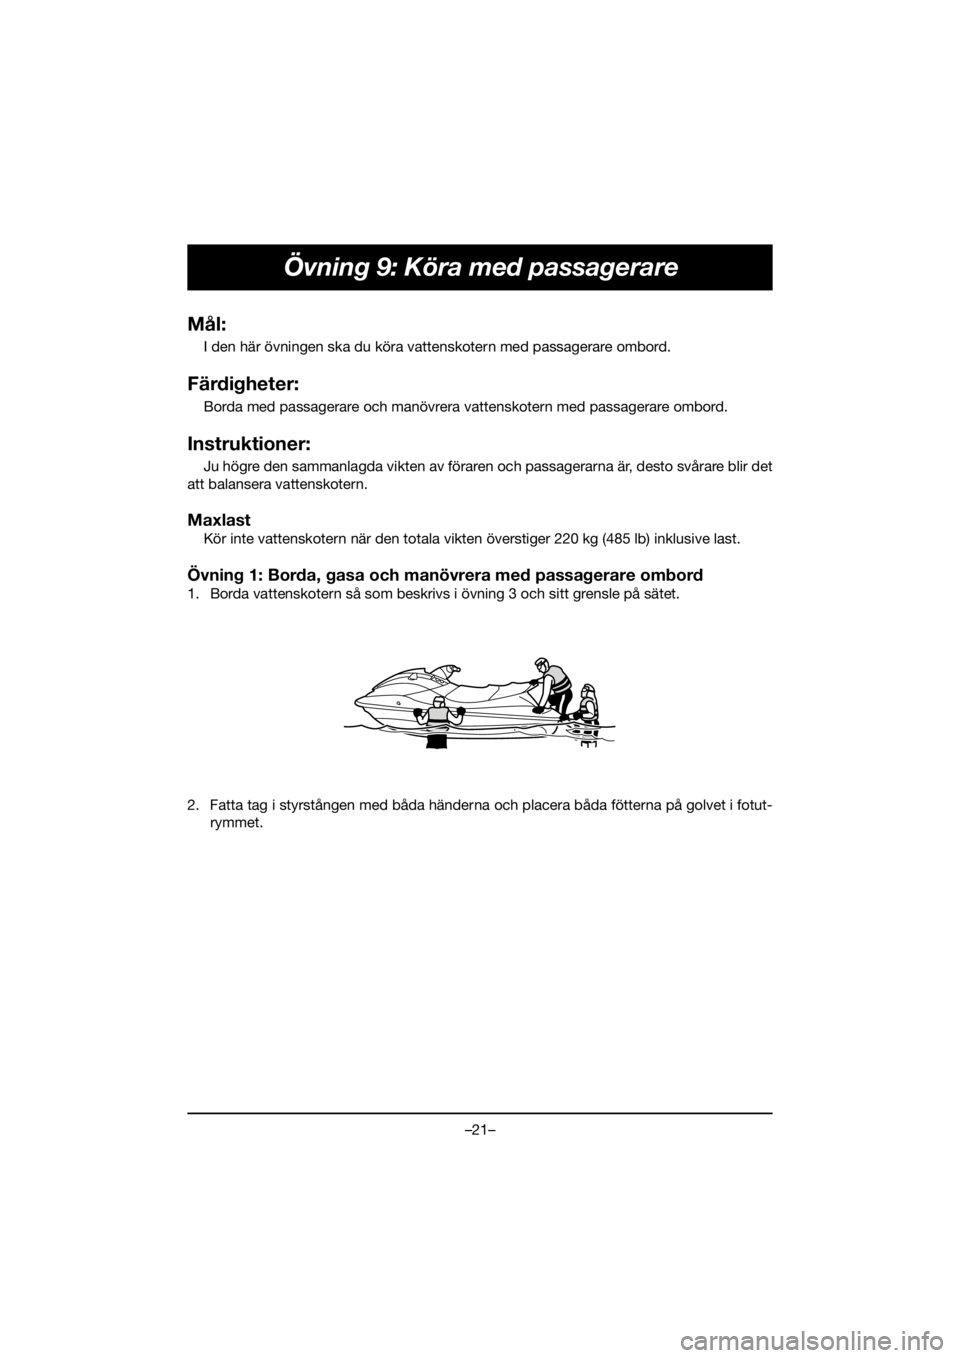 YAMAHA FJR1300 2020  Manuale duso (in Italian) –21–
Övning 9: Köra med passagerare
Mål:
I den här övningen ska du köra vattenskotern med passagerare ombord.
Färdigheter:
Borda med passagerare och manövrera vattenskotern med passagerare